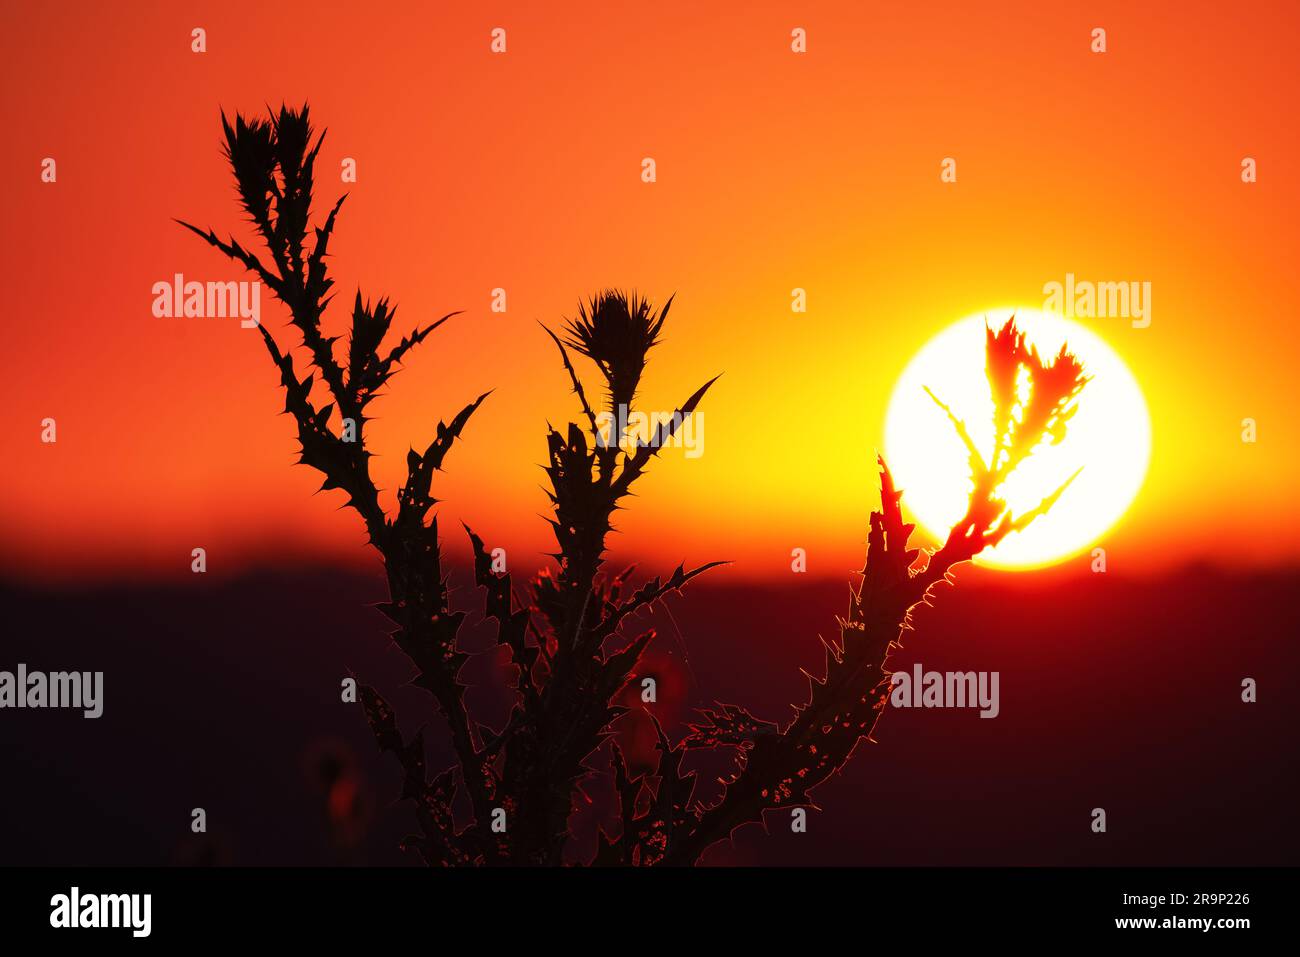 Plant donkey thistle on a sunset background Stock Photo